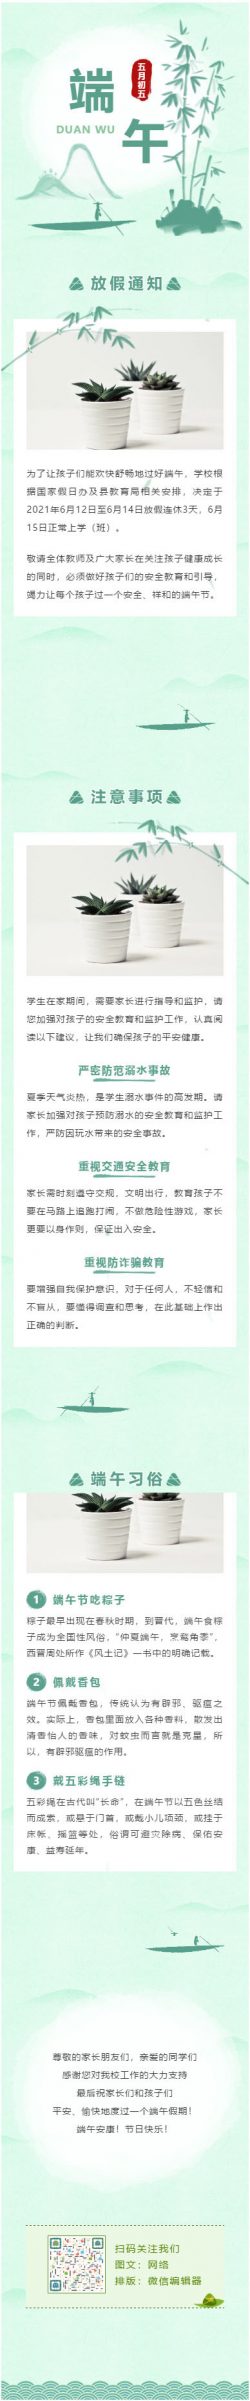 微信端午节公众号推文模板推送图文绿色龙舟粽子